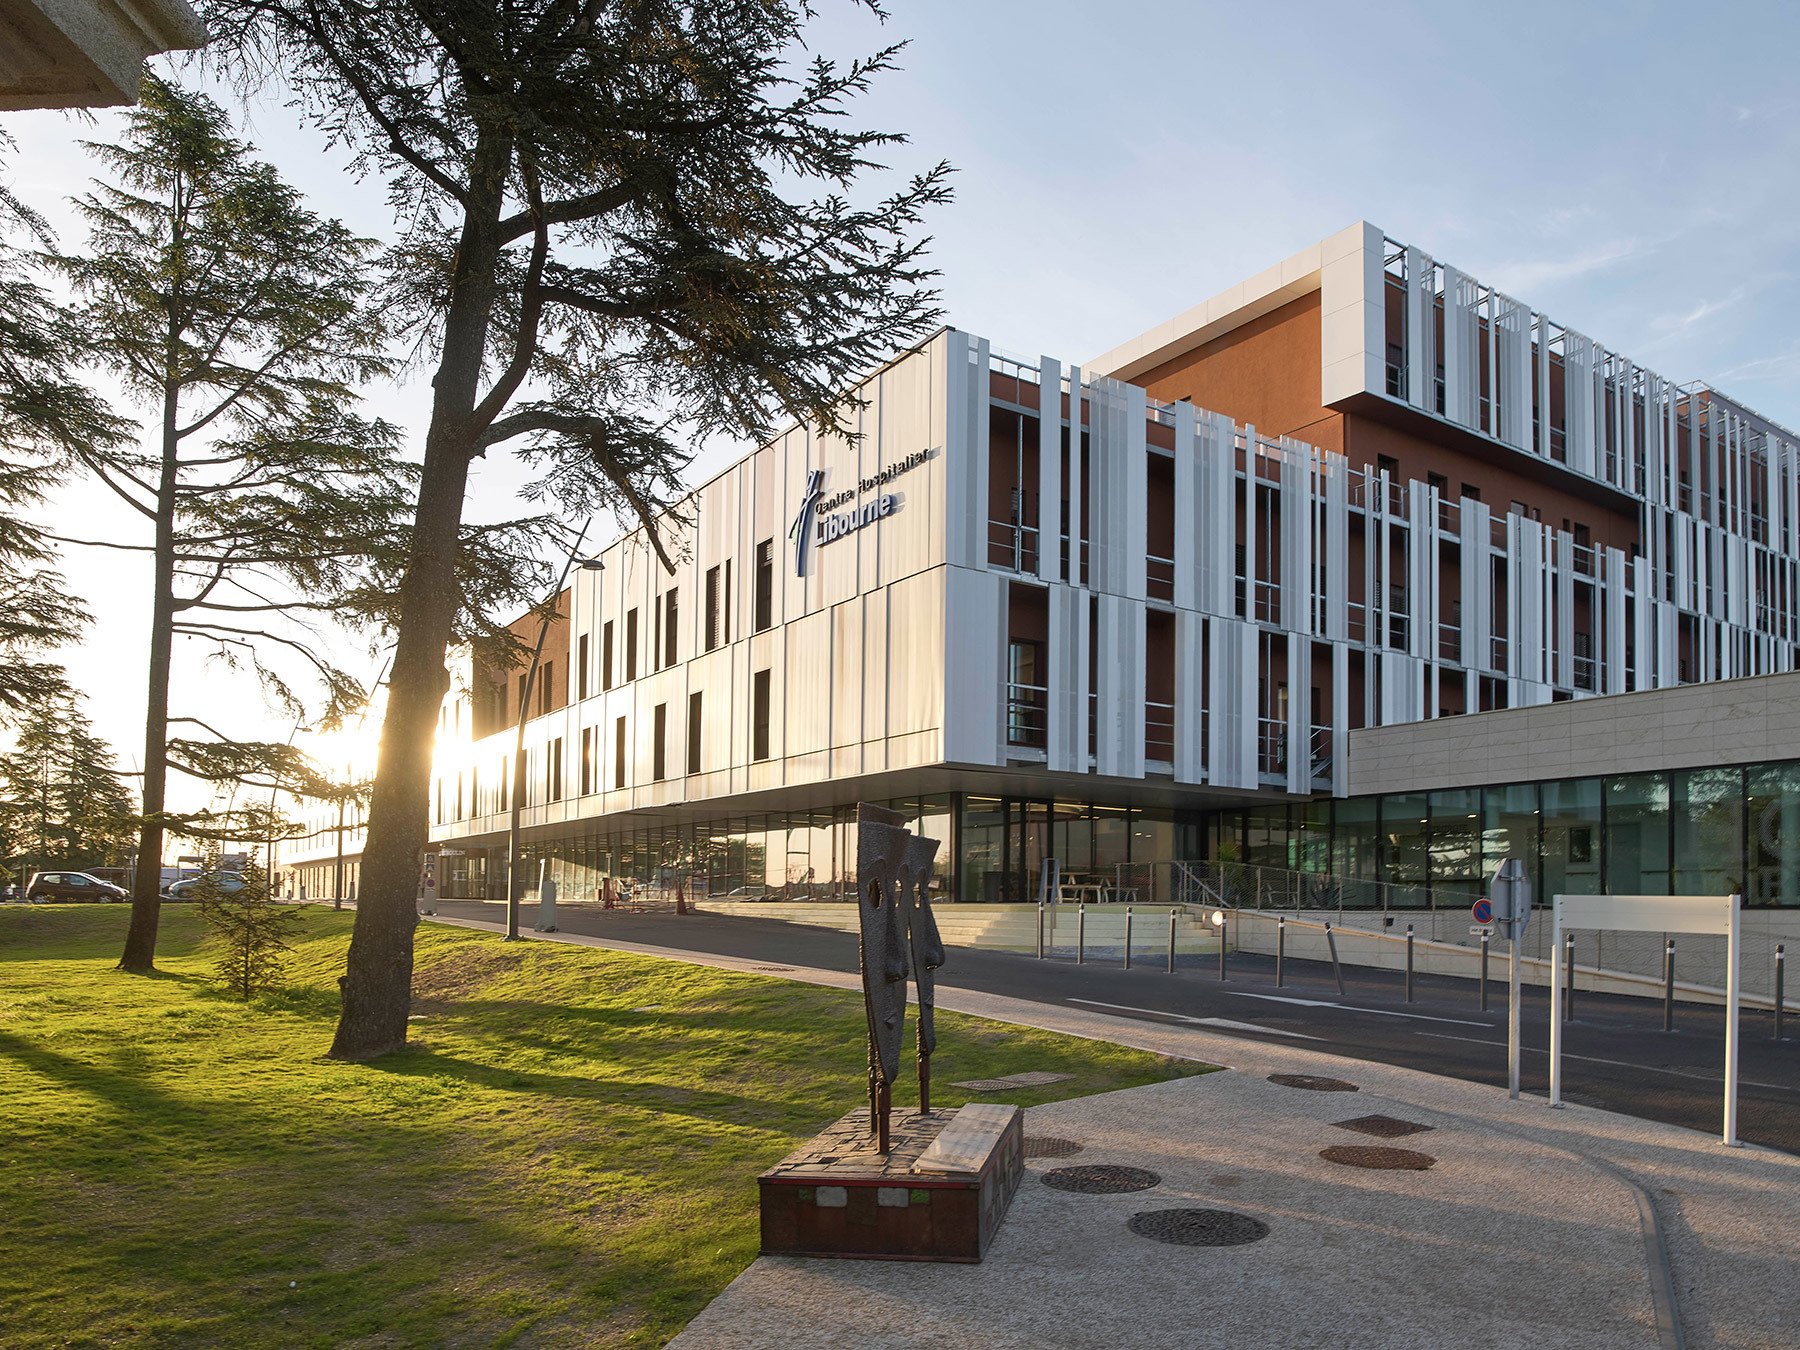 Nouvel Hôpital Robert Boulin Libourne - Vinci - Chabanne & Partenaires - Niveau 3 - Vinci